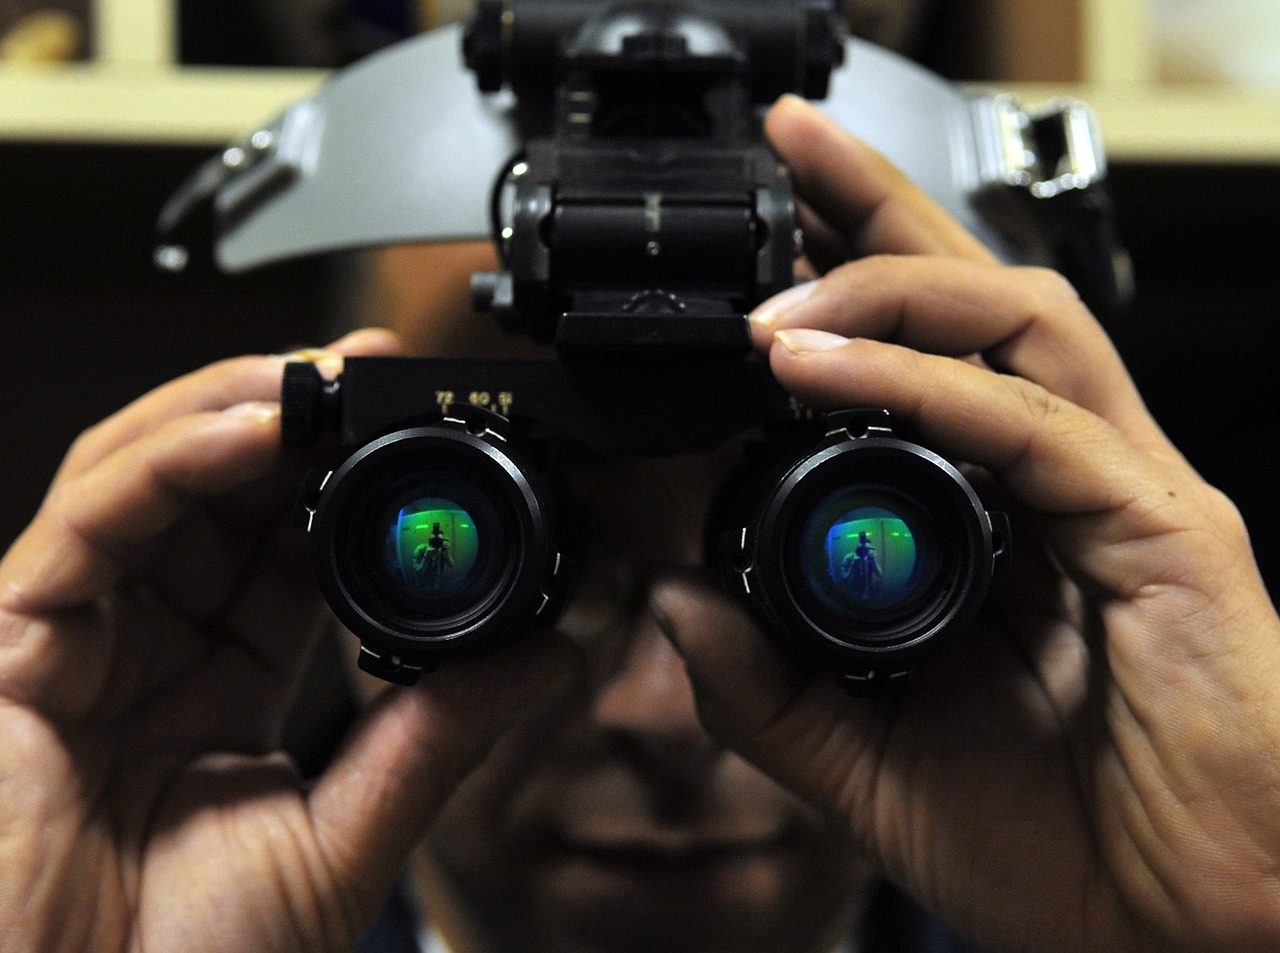 RLF LF HD Digital Nachtsichtgerät Nachtsicht Fernglas Infrarot Wasserdichtes 2.31 LCD-Bildschirm IR-Kamera mit 400m Erkennungsweite 640x480 30FPS Fotokamera und Camcorder mit Einer 32 GB TF Karte 